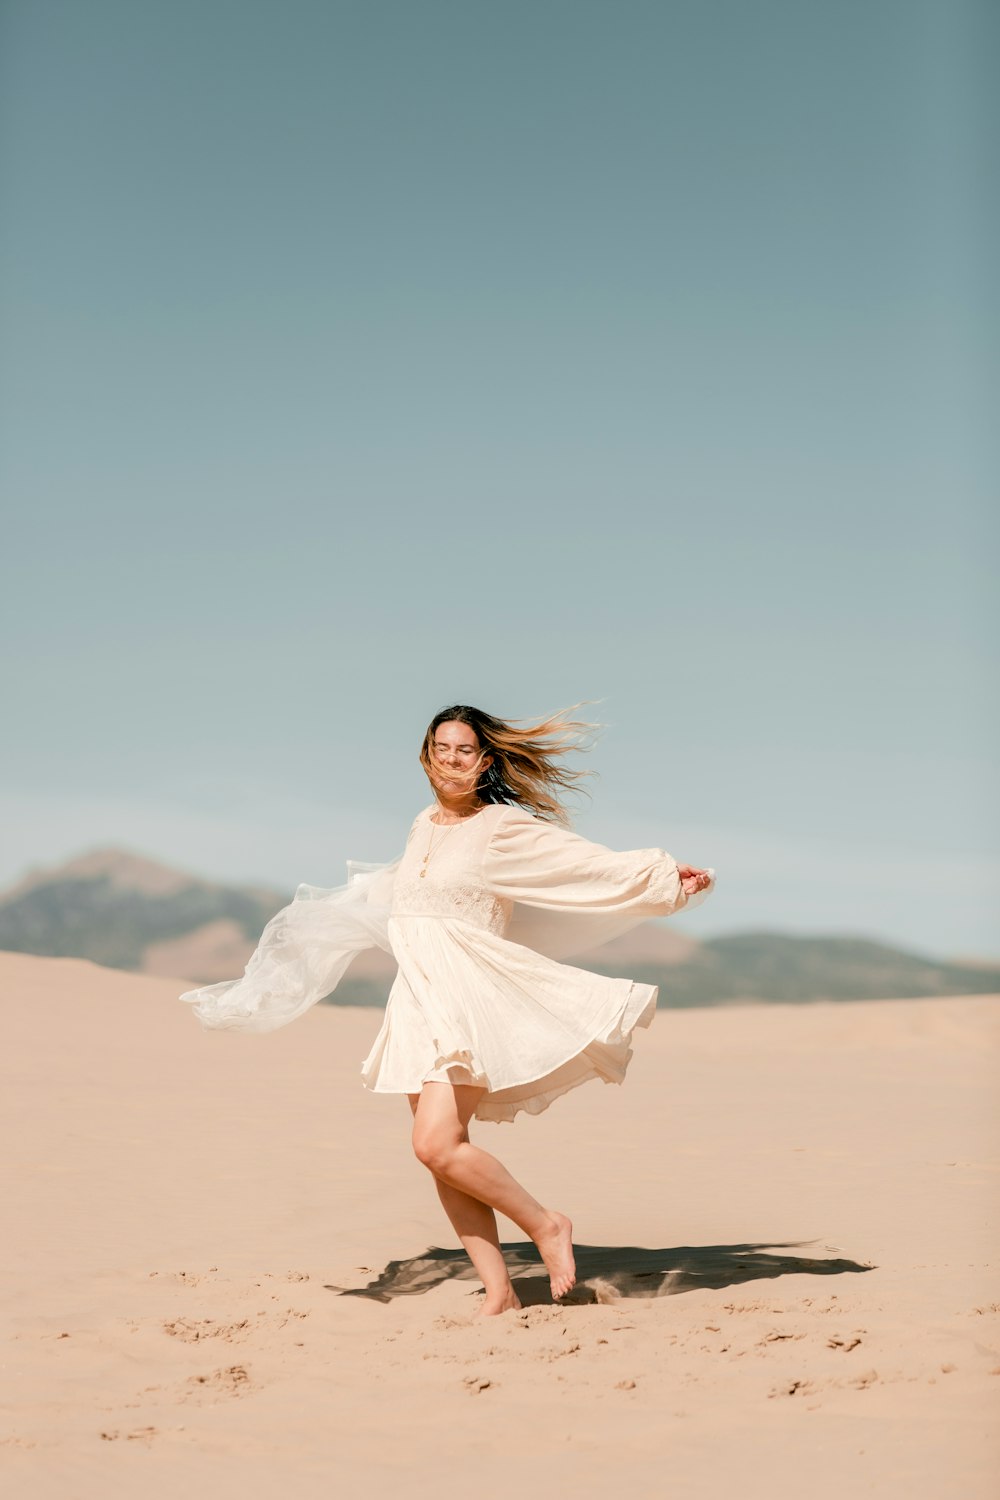 砂漠に立つ白いドレスの女性